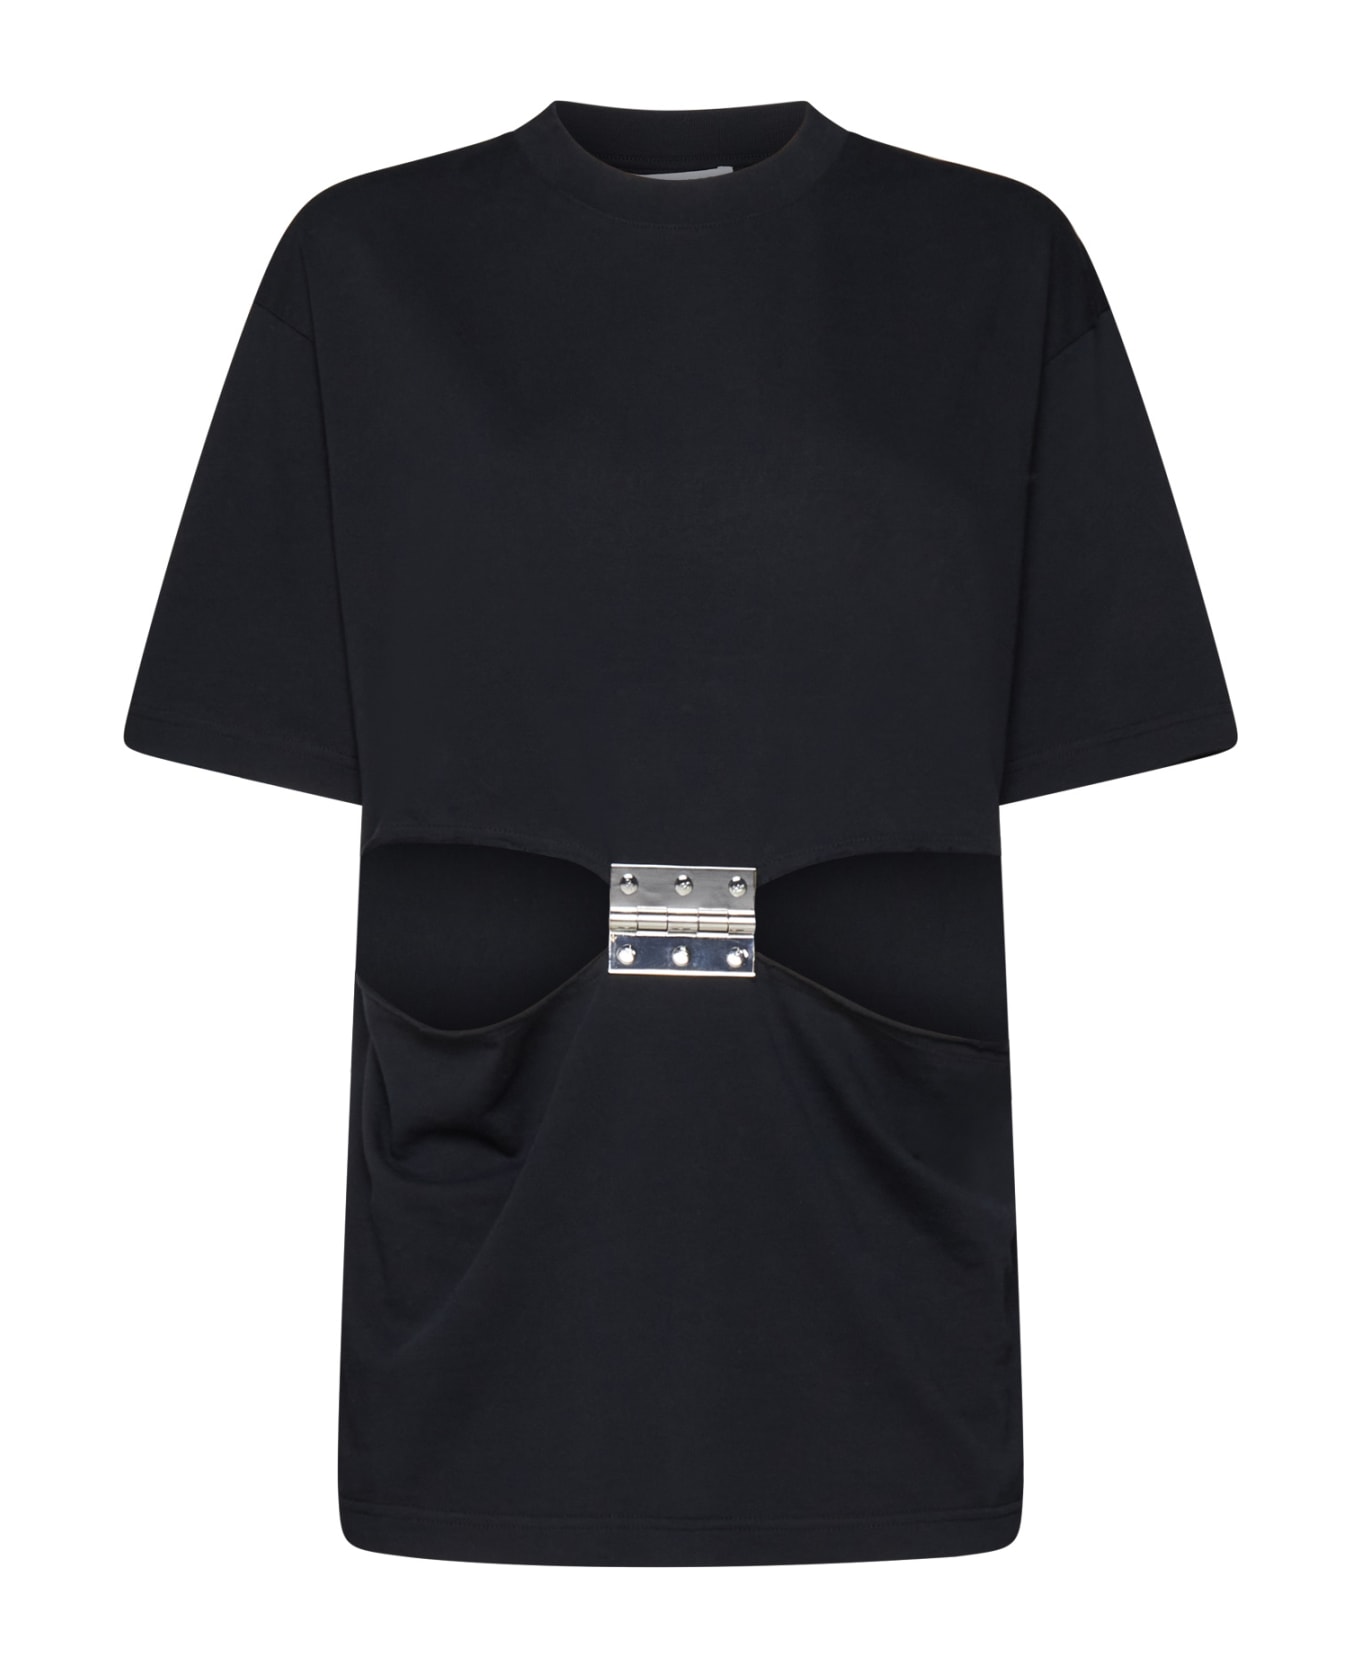 J.W. Anderson T-Shirt - Black Tシャツ